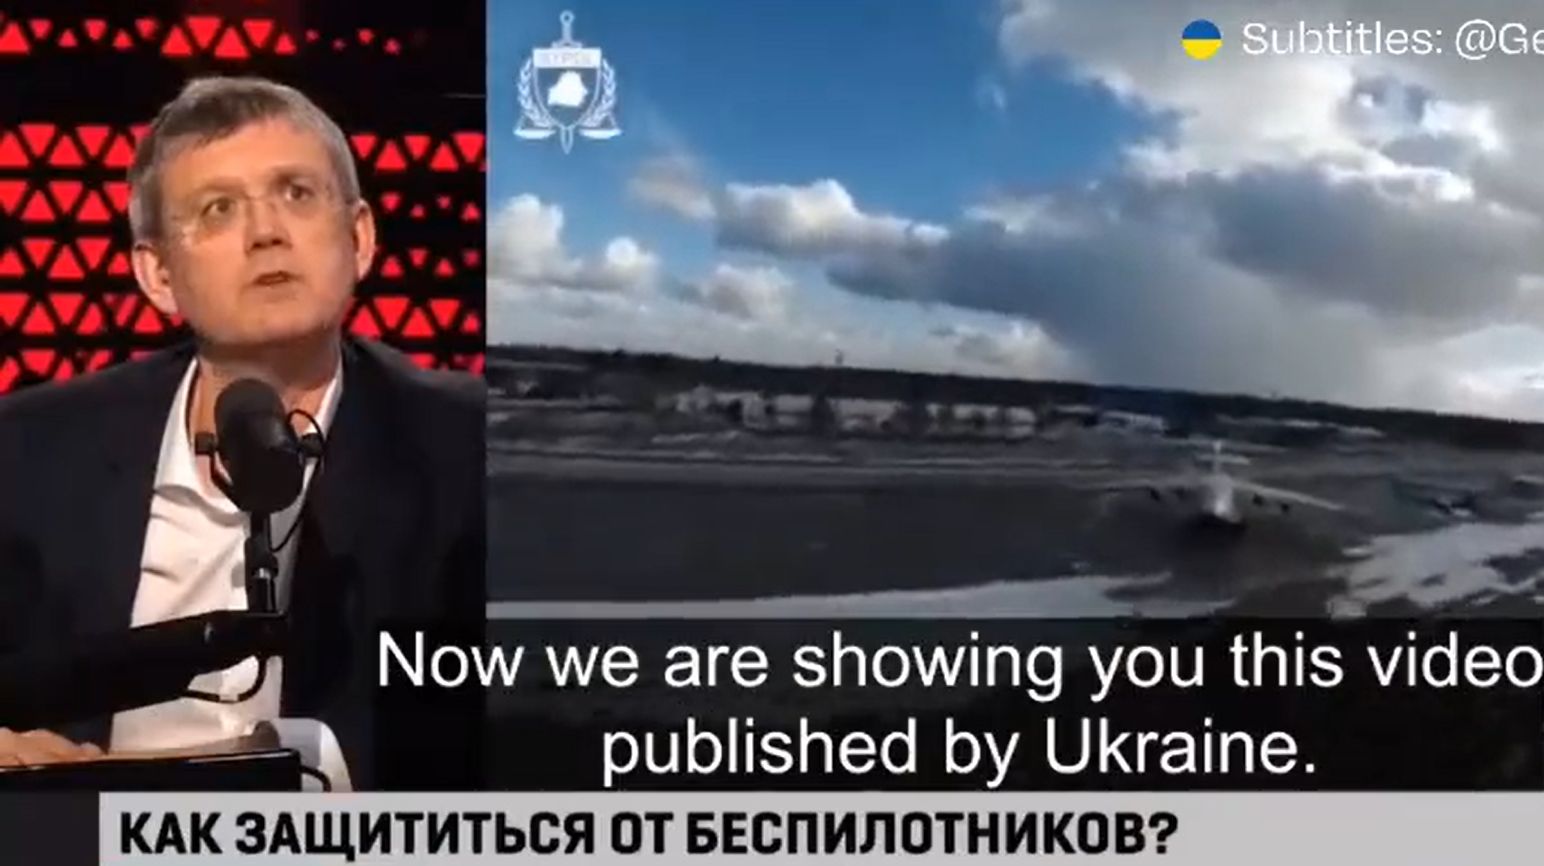 Rosyjski propagandysta nie wytrzymał. "Zmień wideo. To mnie boli"